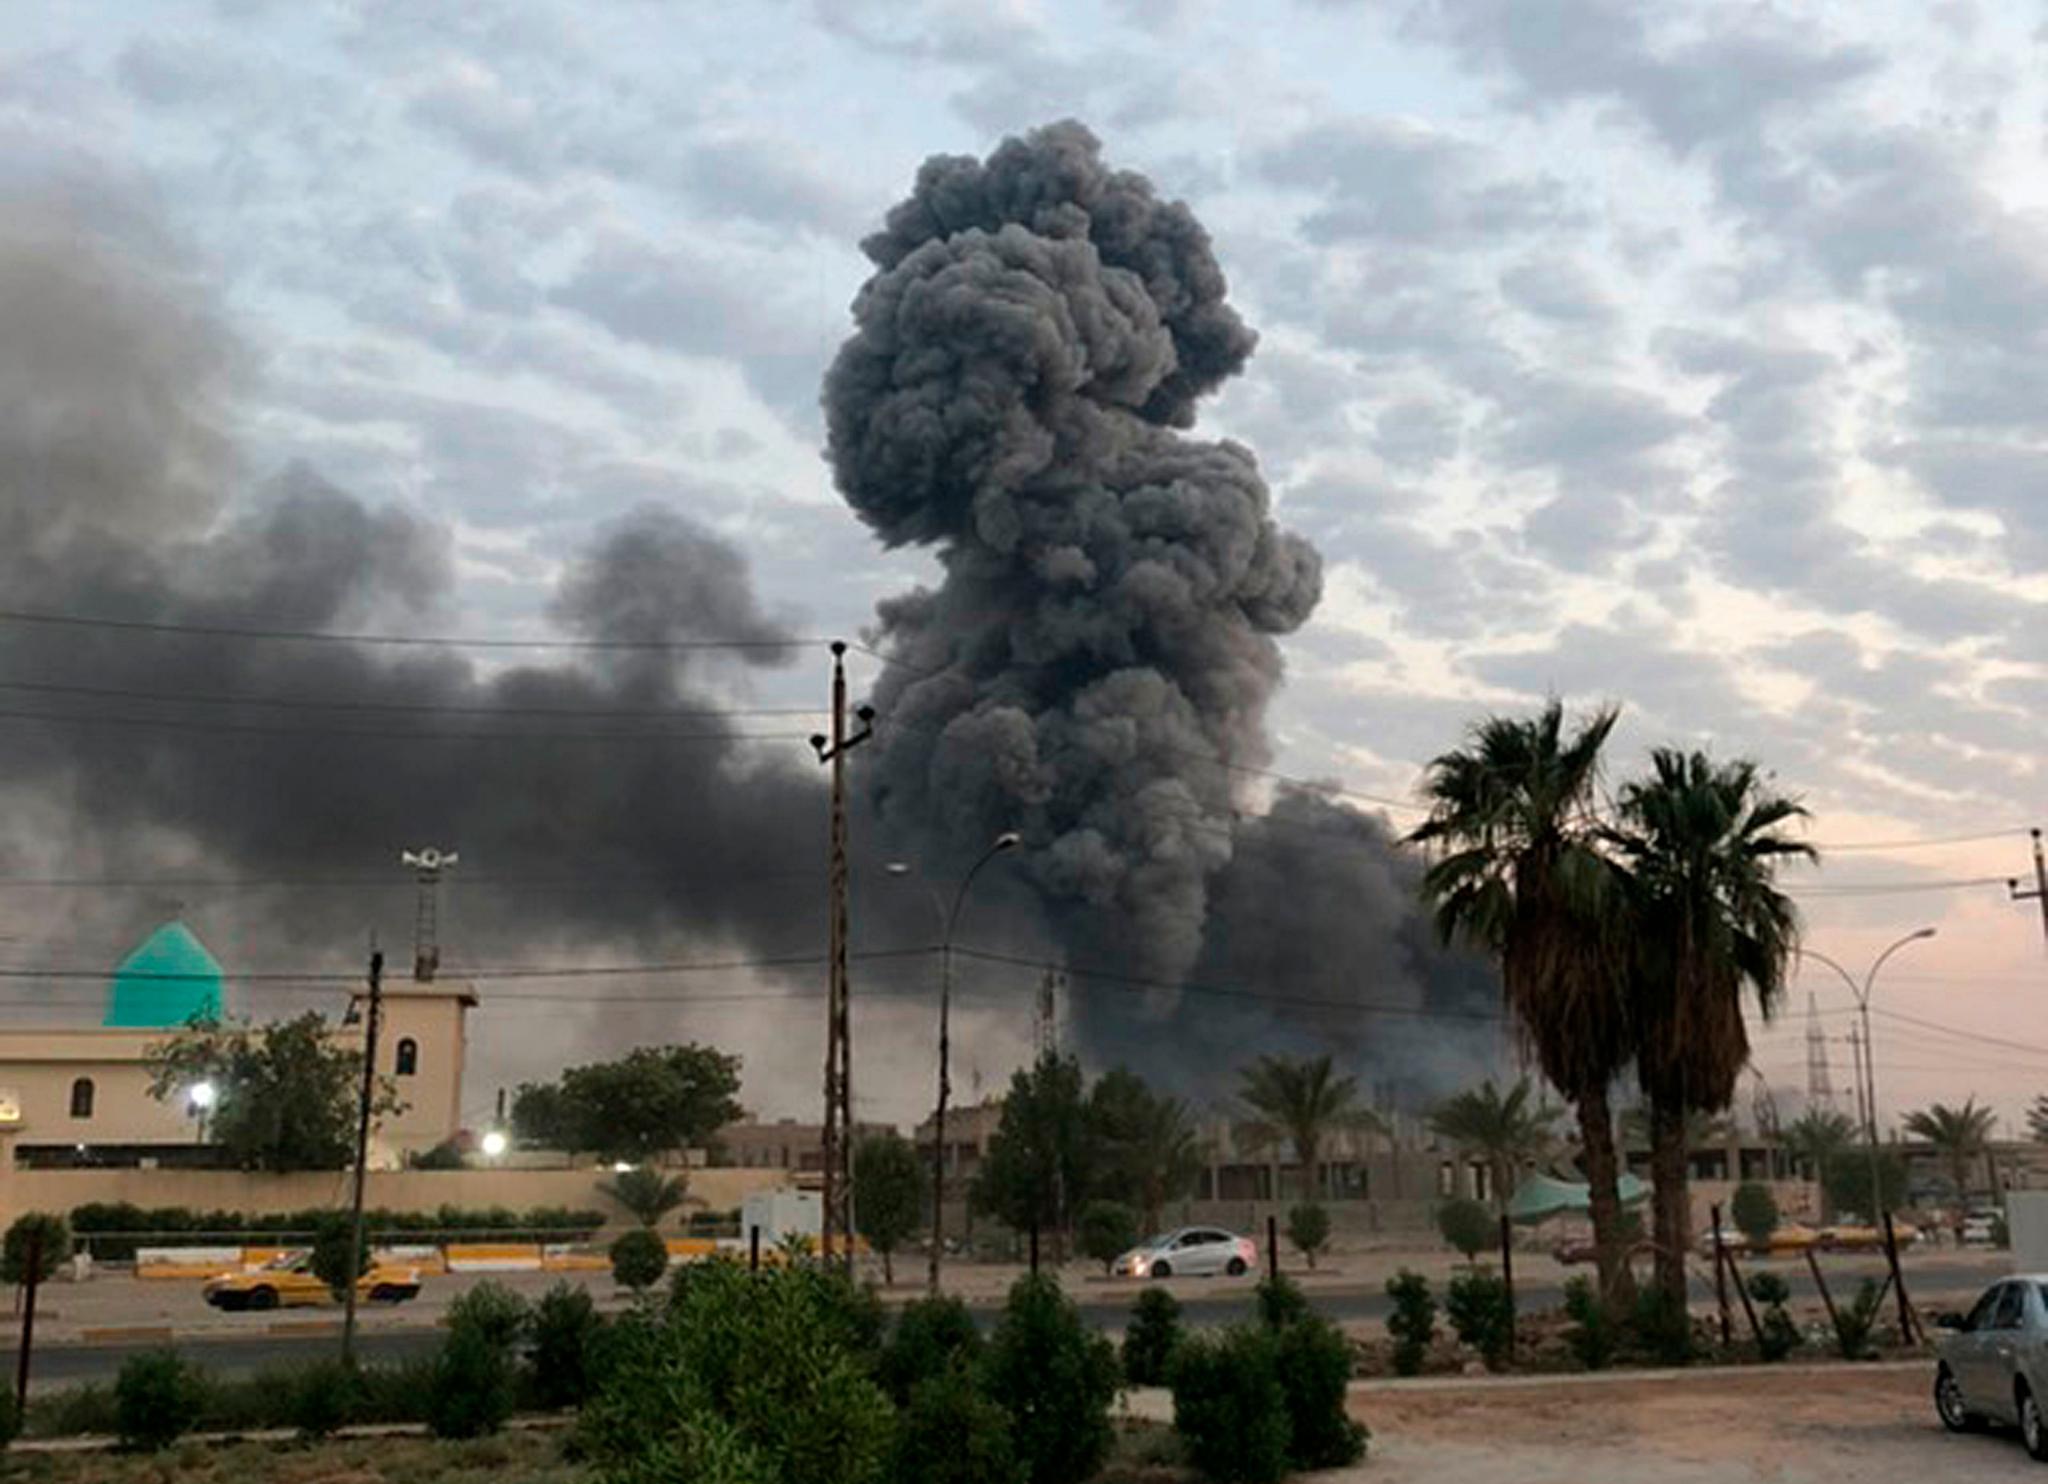 En røyksøyle stiger opp mot himmelen etter en enorm eksplosjon i en militærbase utenfor Bagdad 12. august. En irakisk granskning konkluderte med at basen ble bombet ved hjelp av en drone.